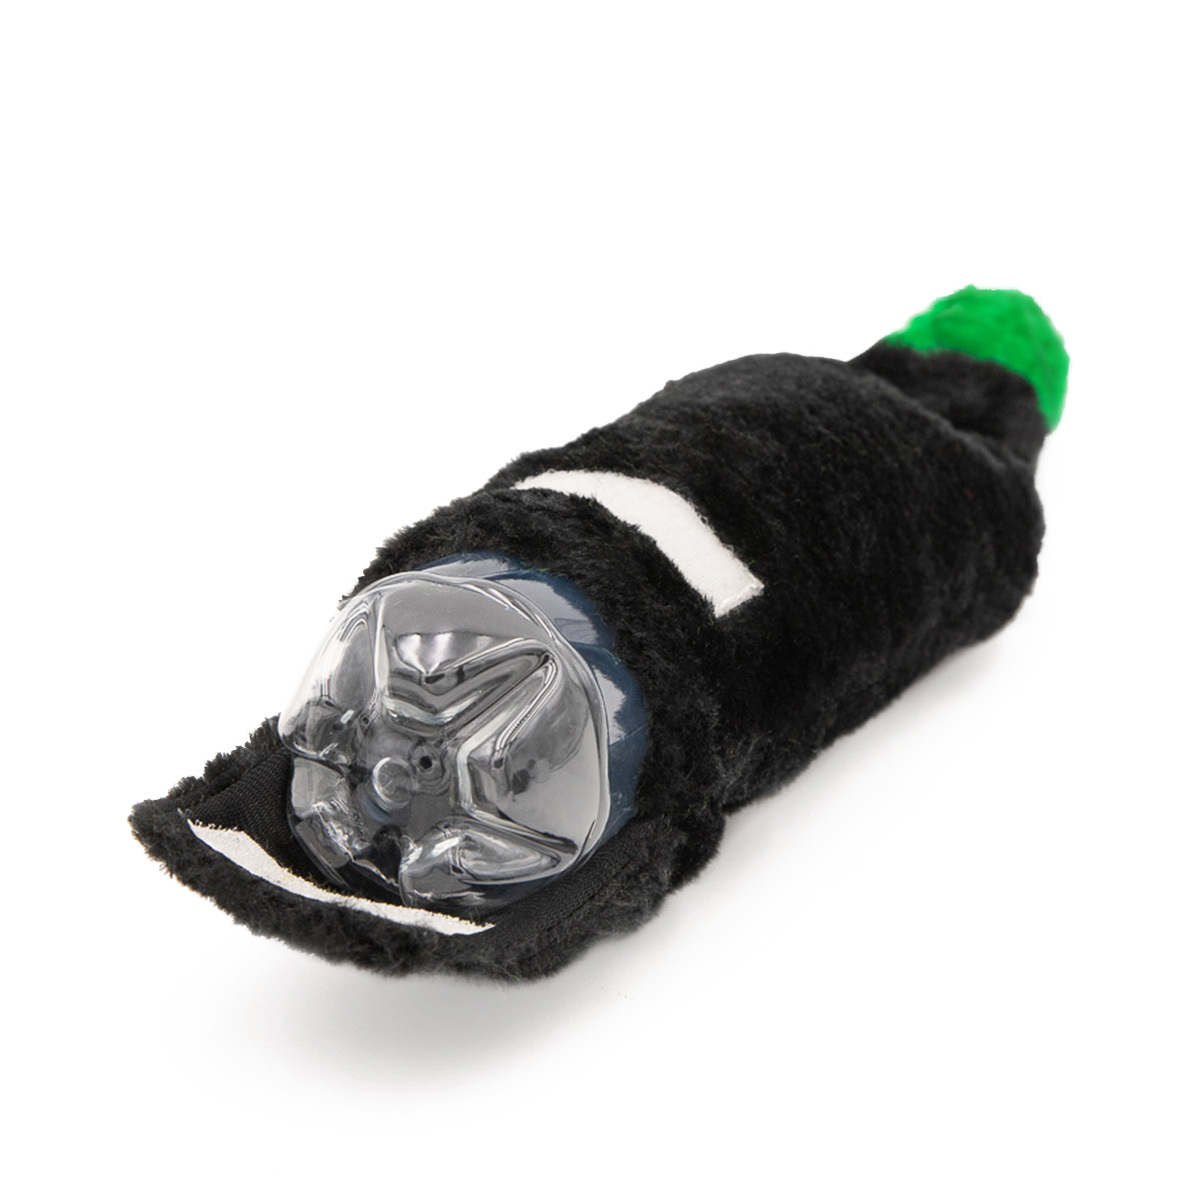 Zippy Paws Happy Hour Crusherz Squeaker Bottle Dog Toy - Black Magic Potion image 1